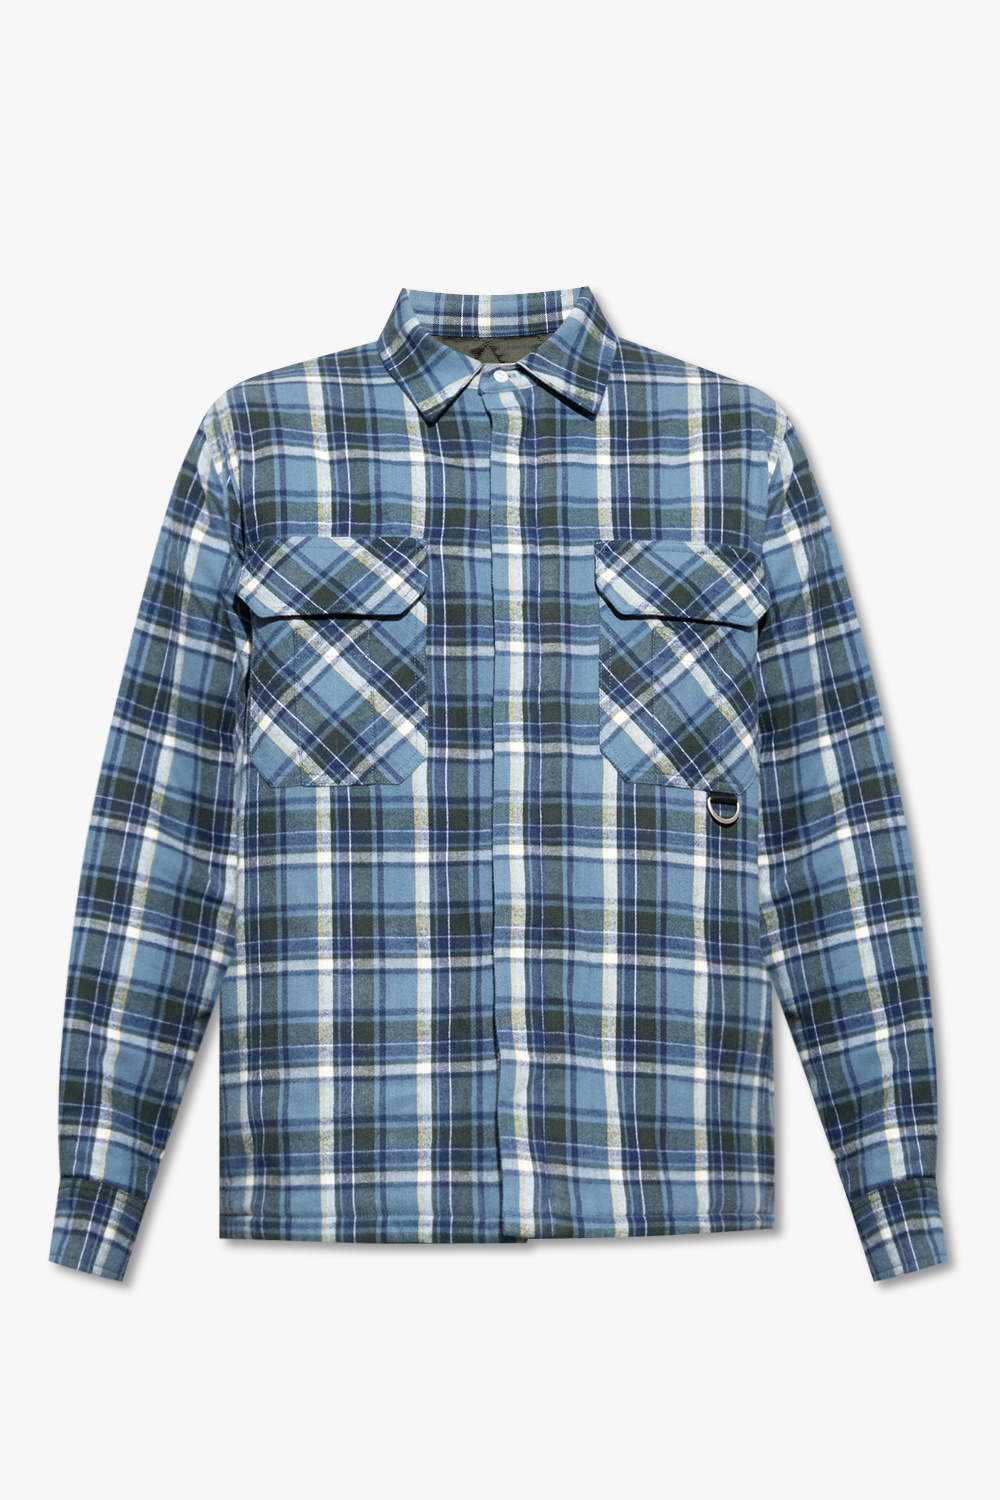 Loewe Checked shirt